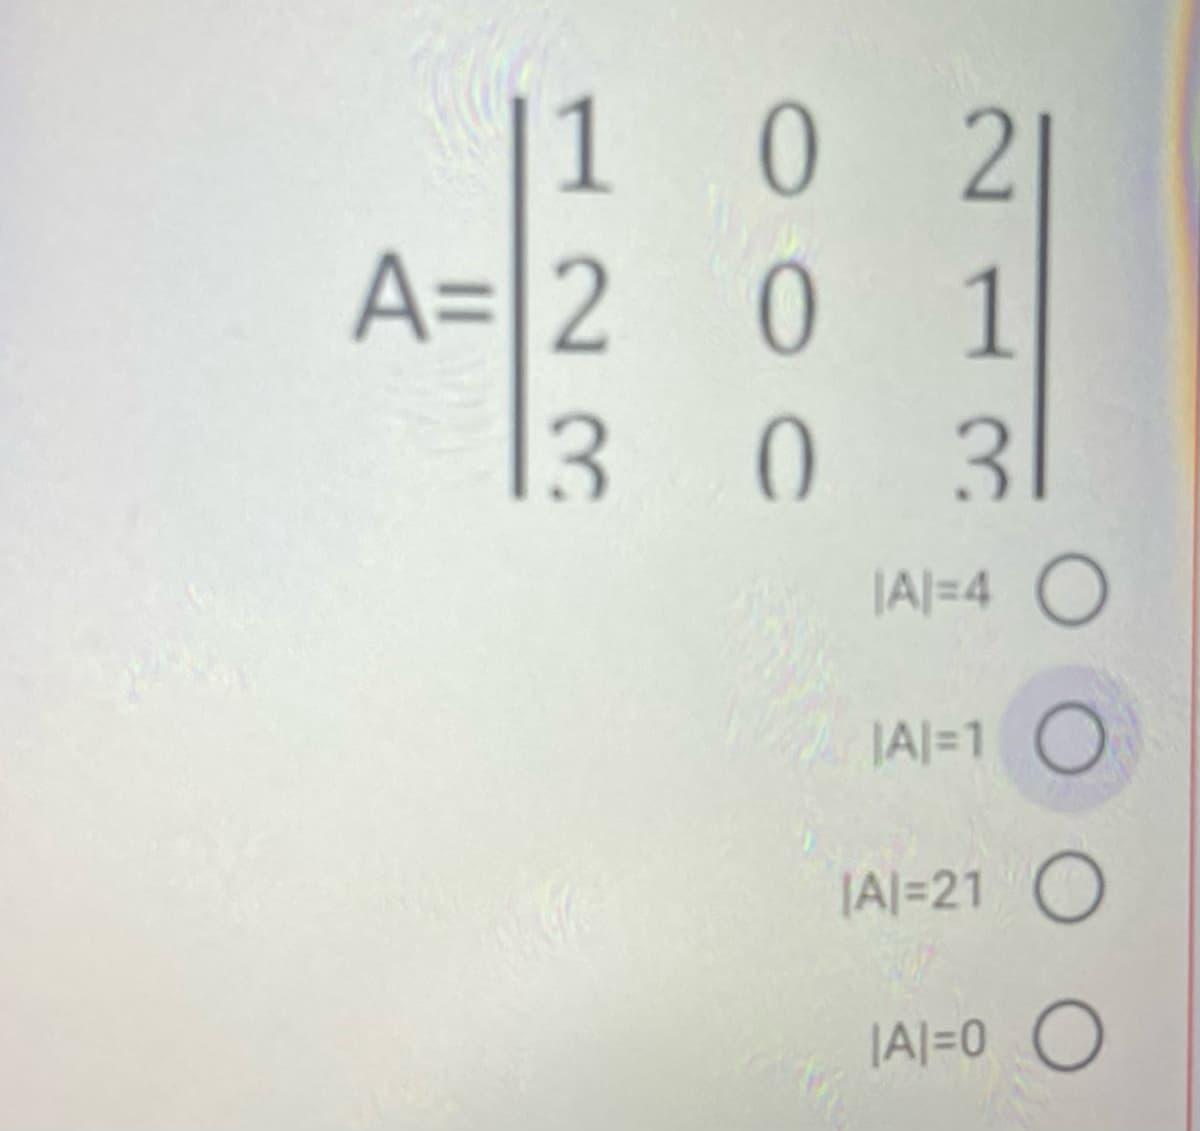 |1 0 2
|
A= 2 0 1
|3 0 3
1
|A|=4 O
|Al=1 O
|Al=21 O
|A|=0 O
